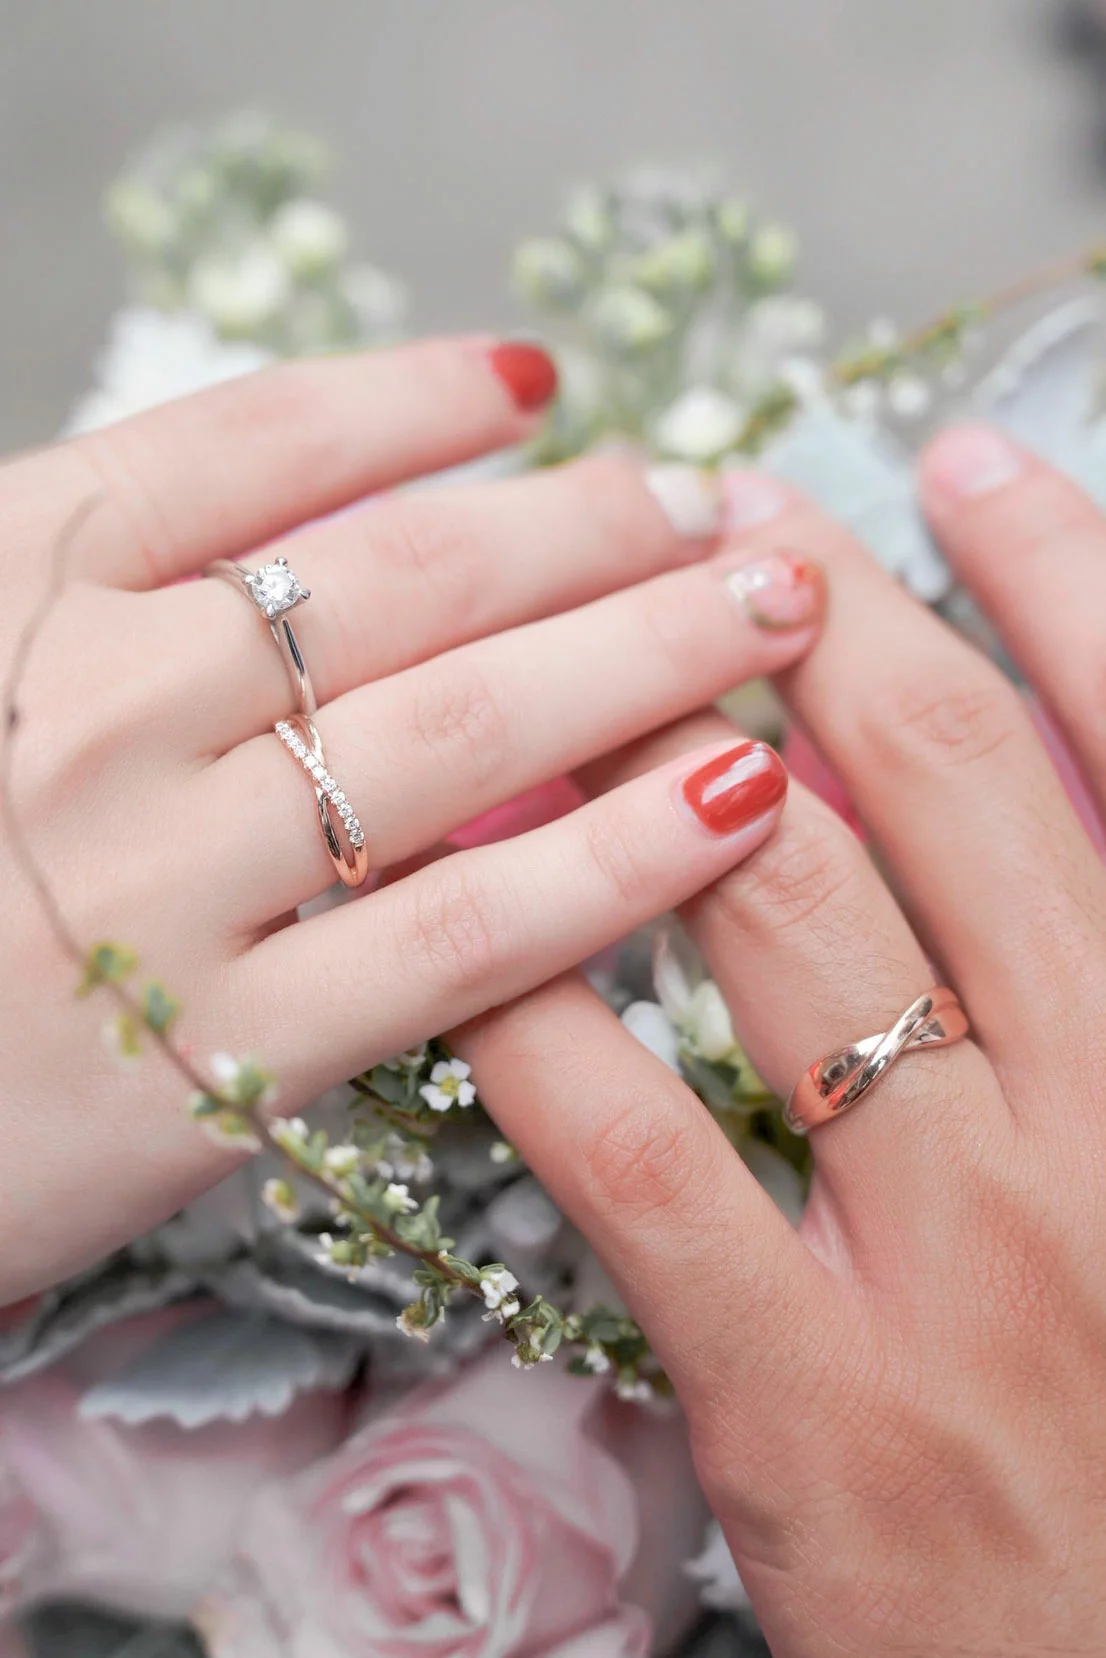 Con trai đeo nhẫn cưới tay nào là đúng nhất? Tay trái hay tay phải?